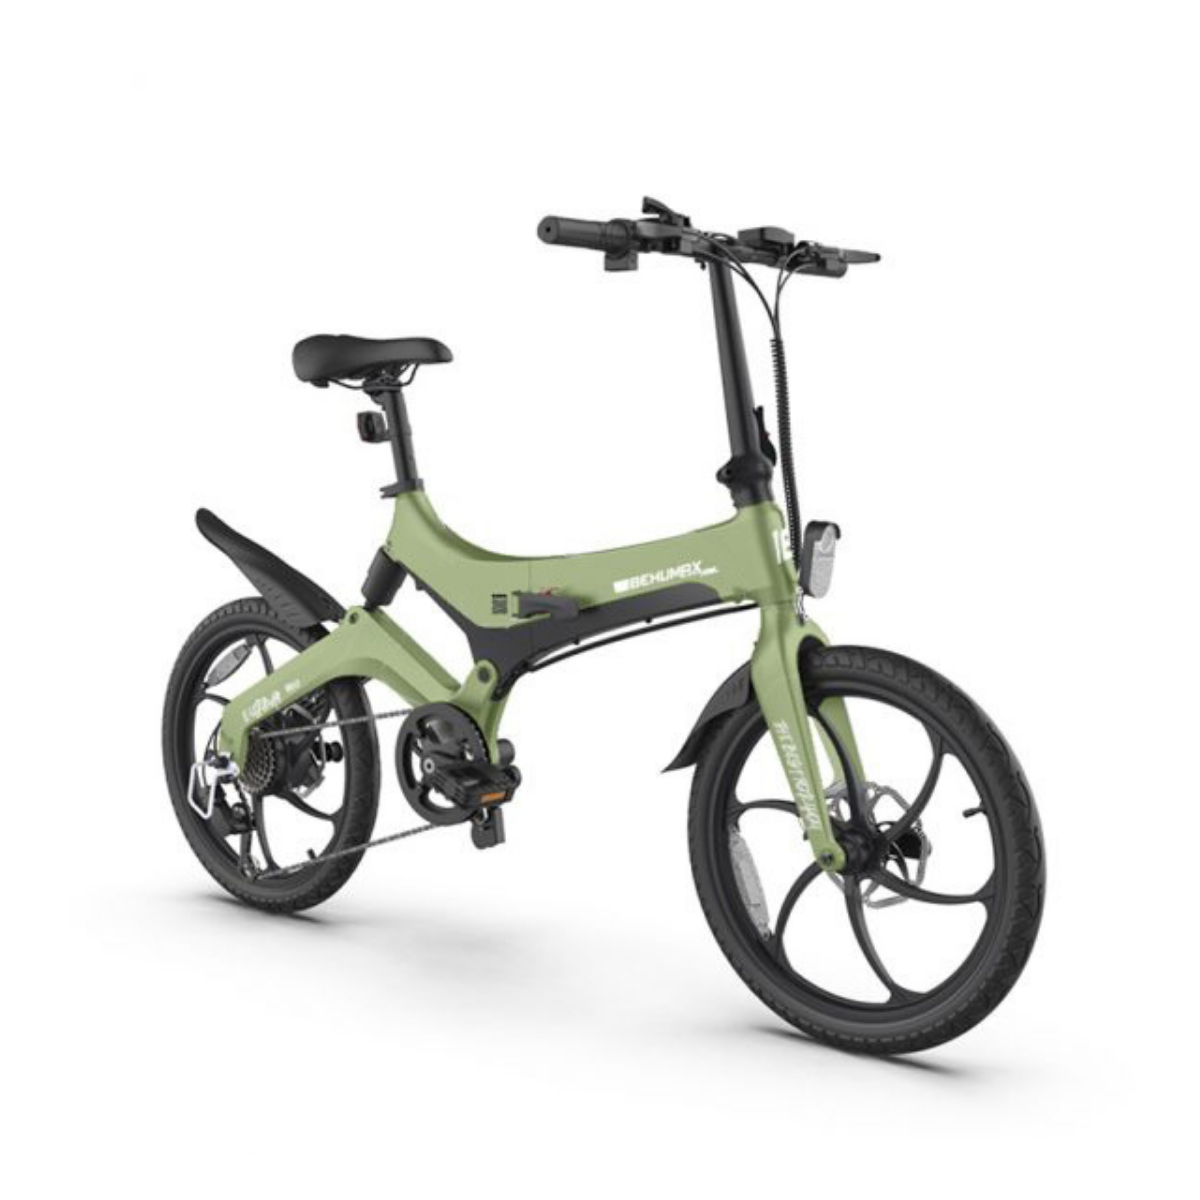 Bicicletas eléctricas urbanas online al mejor precio